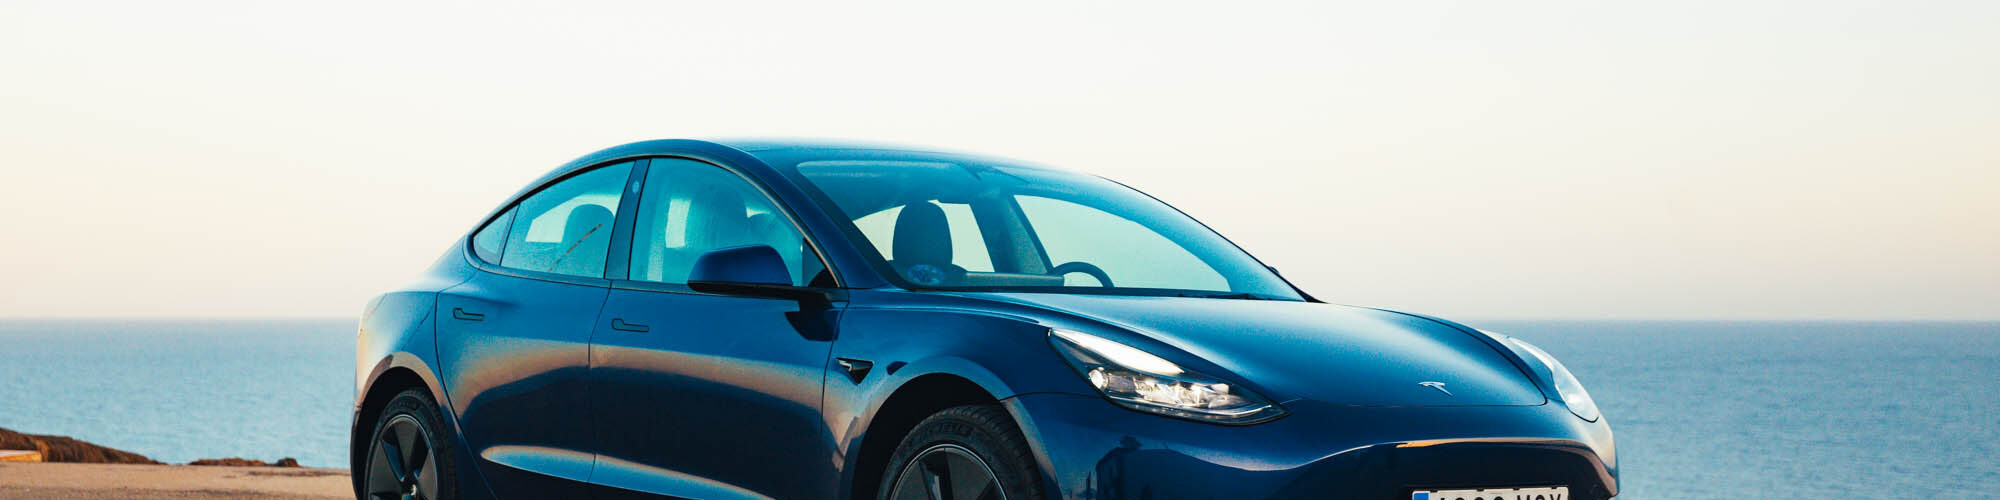 Tesla Model 3 im Test – Was kann der günstigste Tesla aller Zeiten? -  DOWNTOWN Magazine